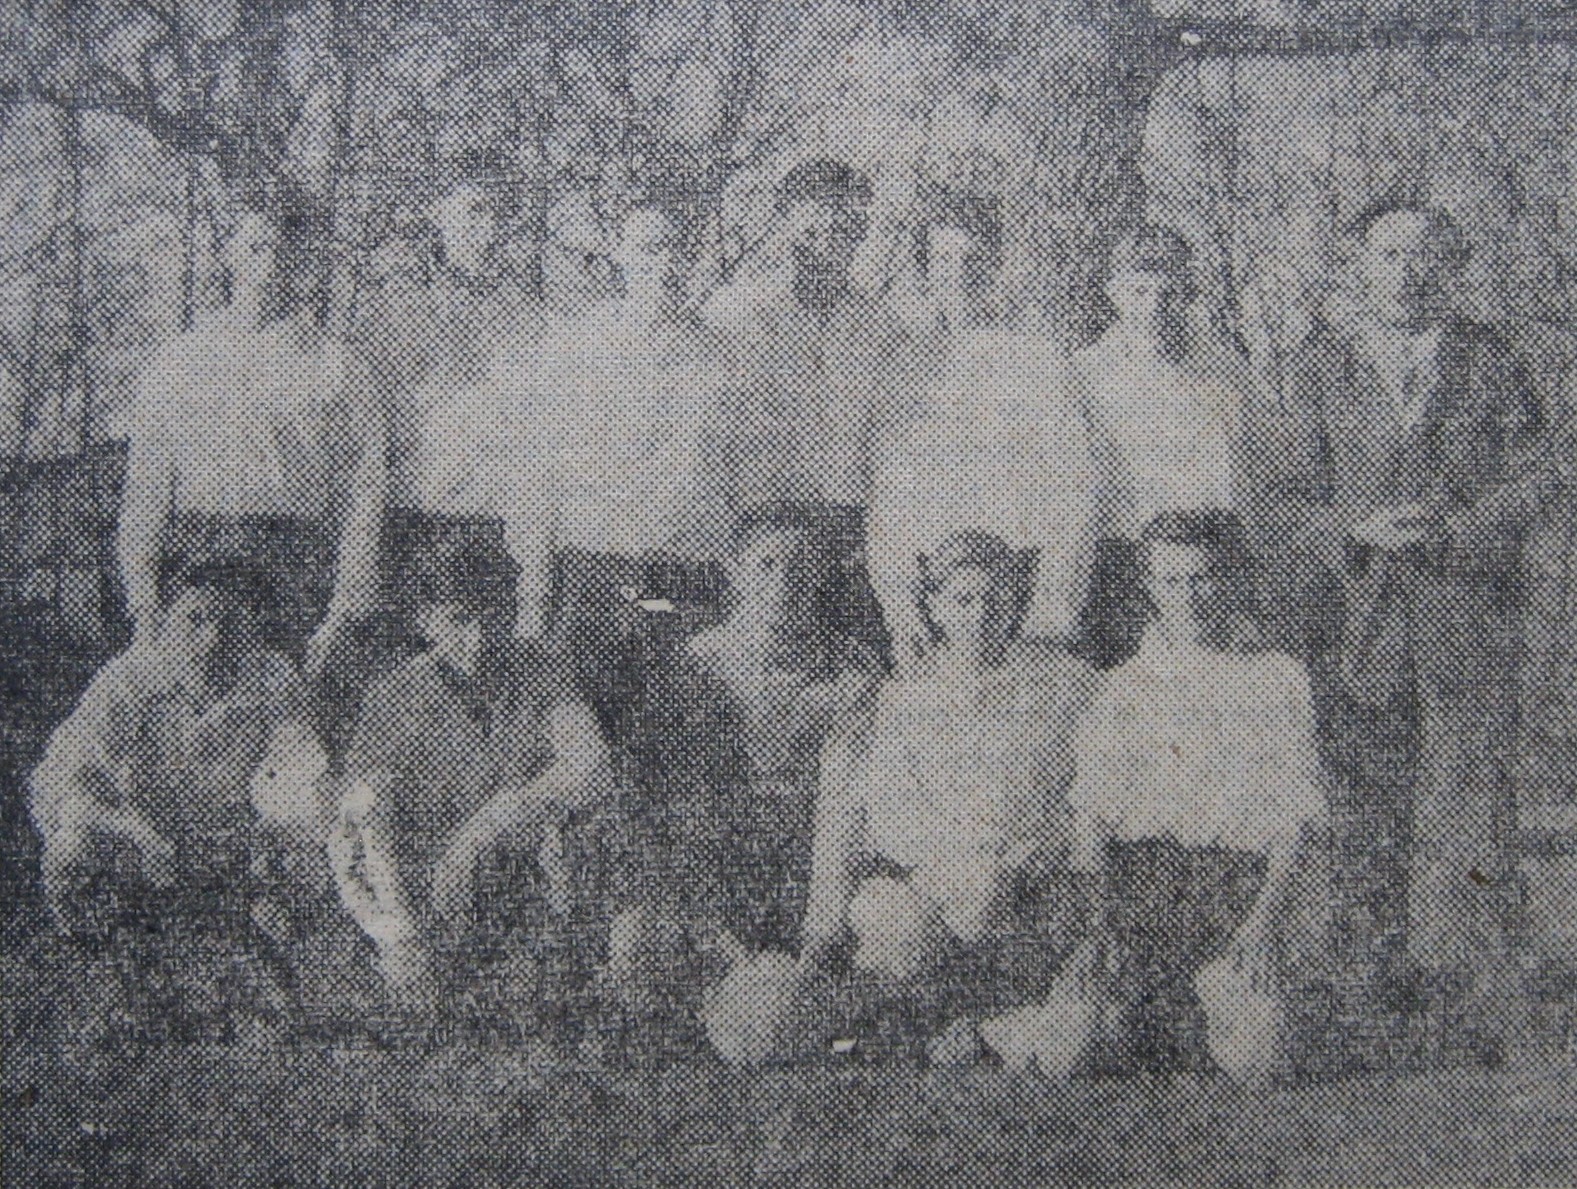 Juniors 1959-60